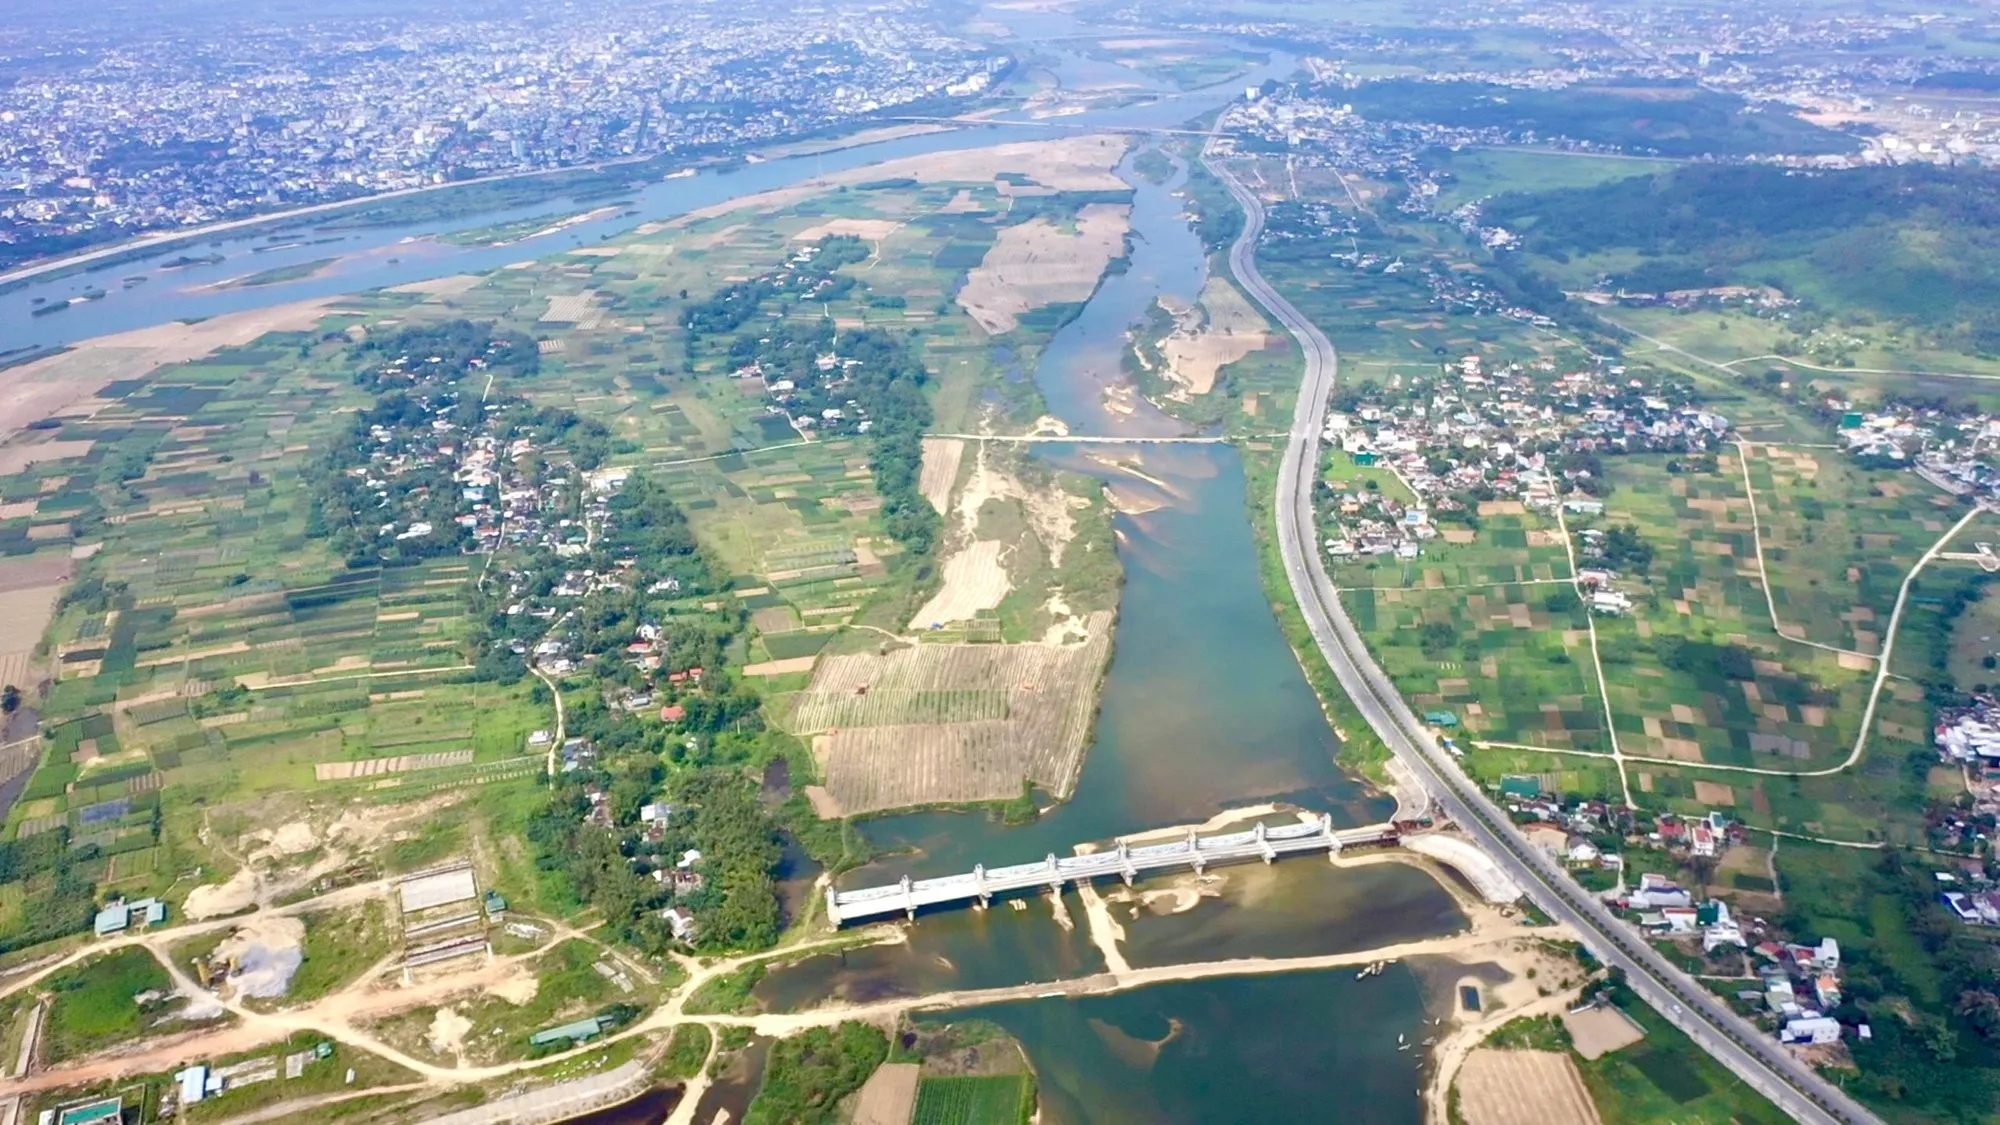 Quảng Ngãi: Ấn định thời gian khởi công dự án đường Hoàng Sa - Dốc Sỏi 3.500 tỷ đồng